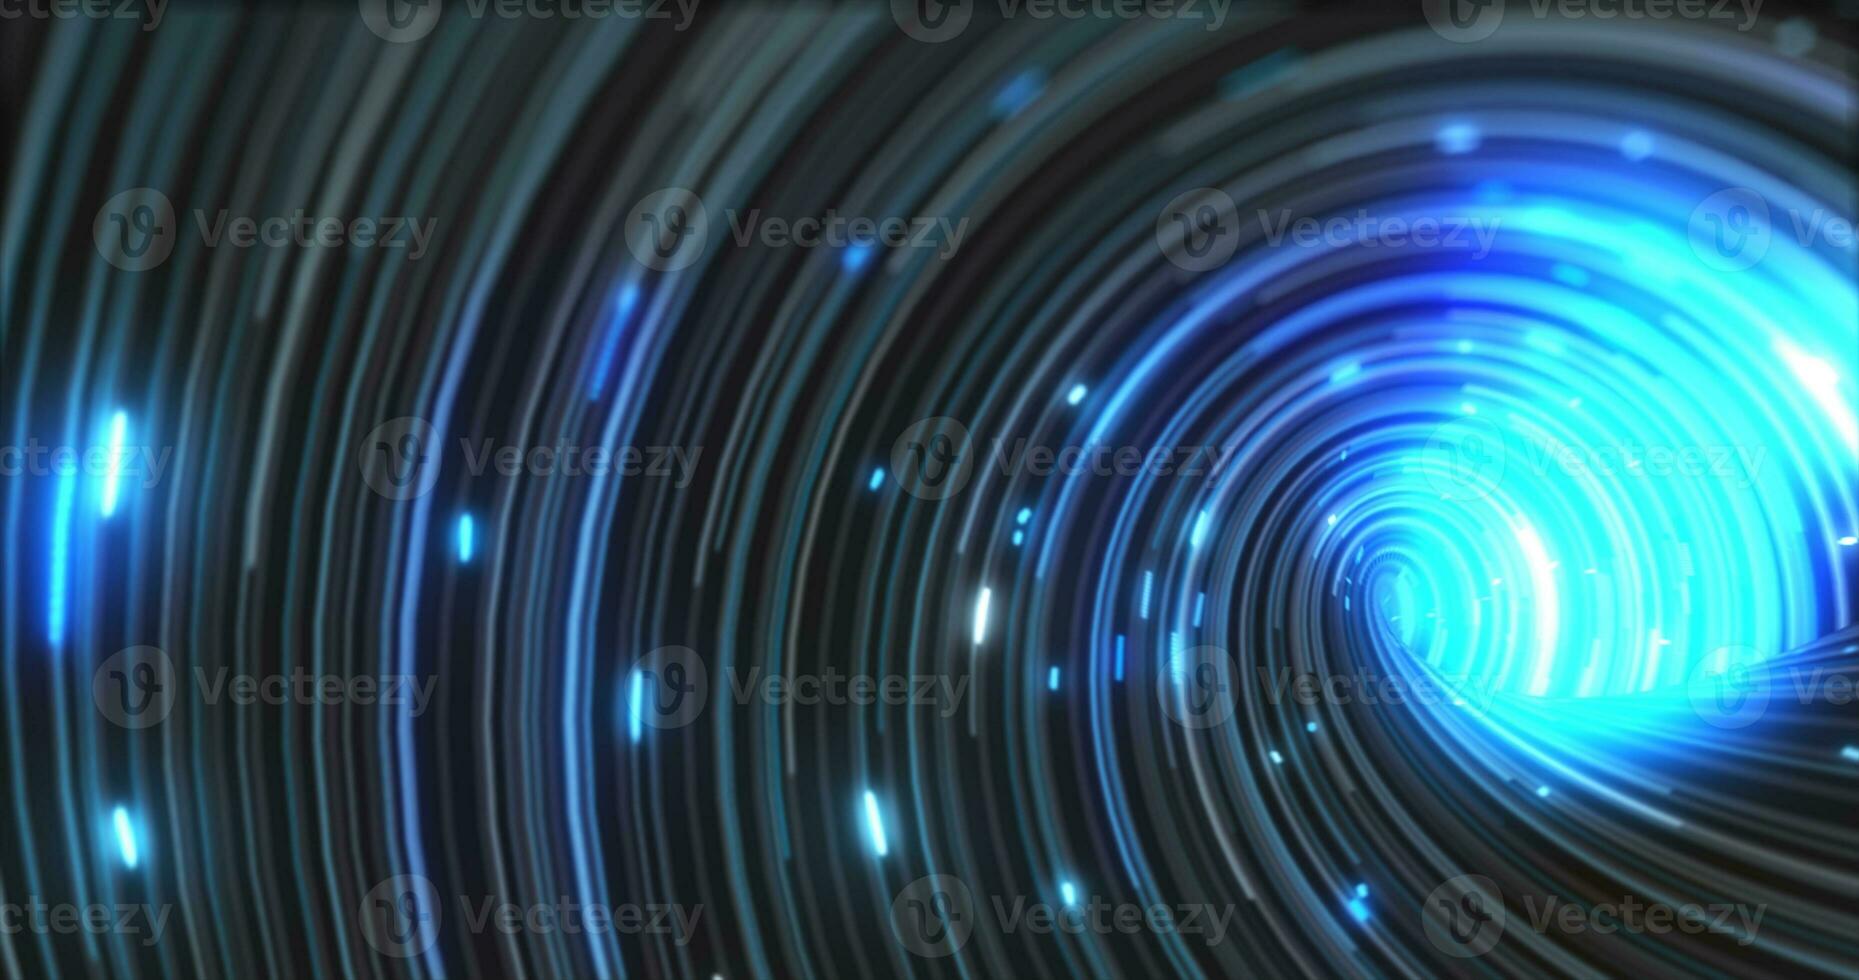 abstrakt Energie Blau wirbelnd gebogen Linien von glühend magisch Streifen und Energie Partikel Hintergrund foto